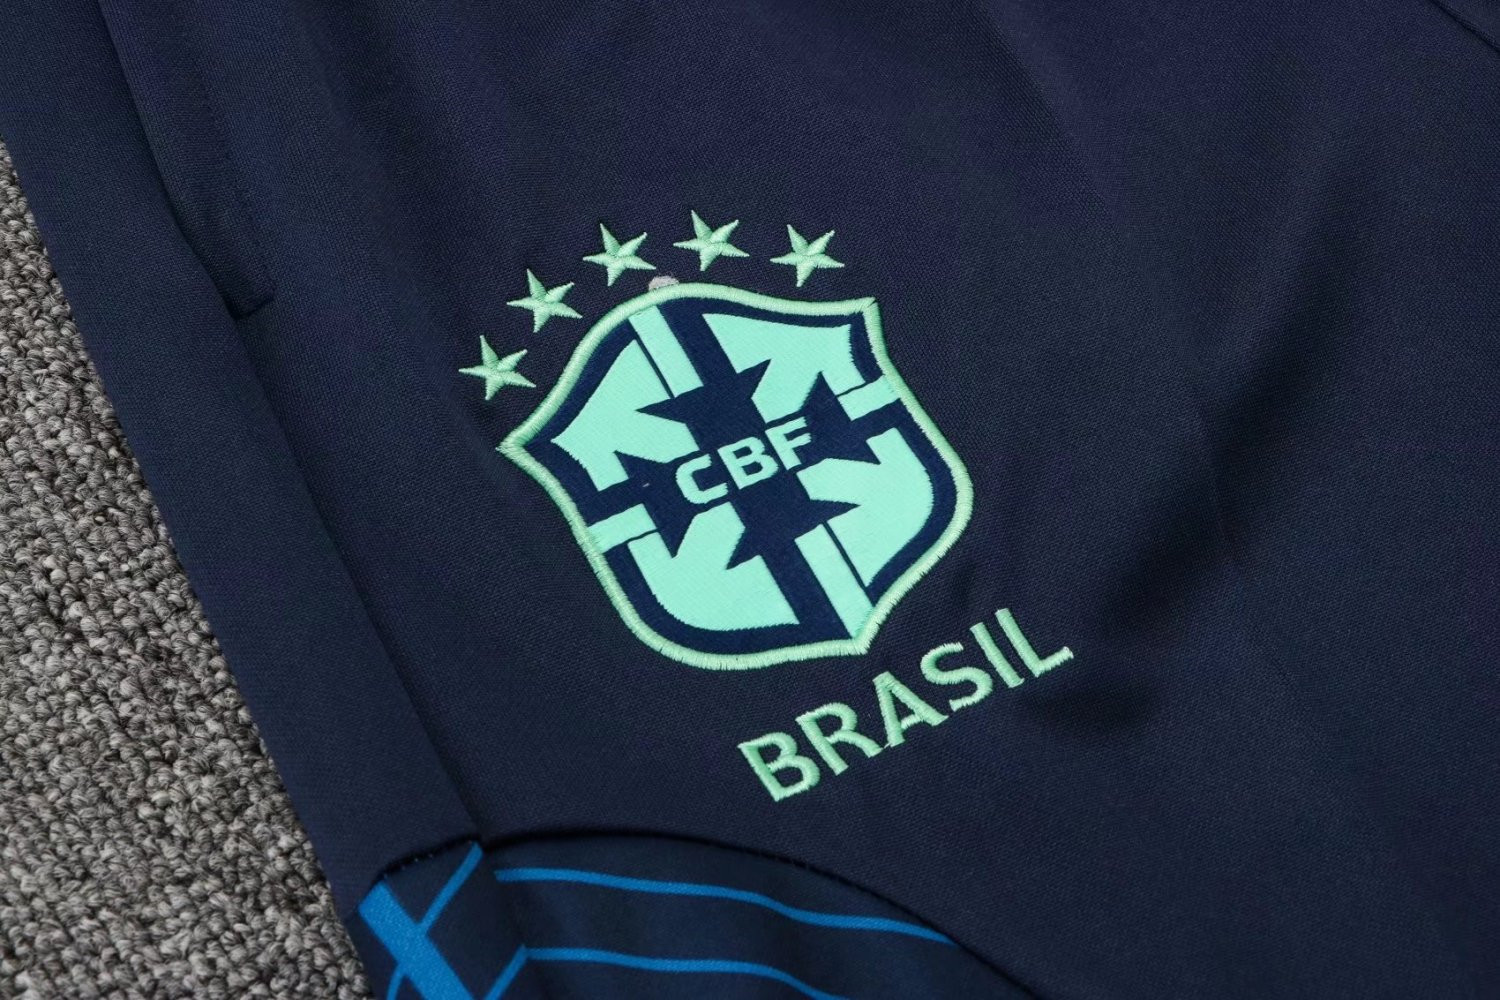 Brazil Soccer Training Suit Green Mens 2022